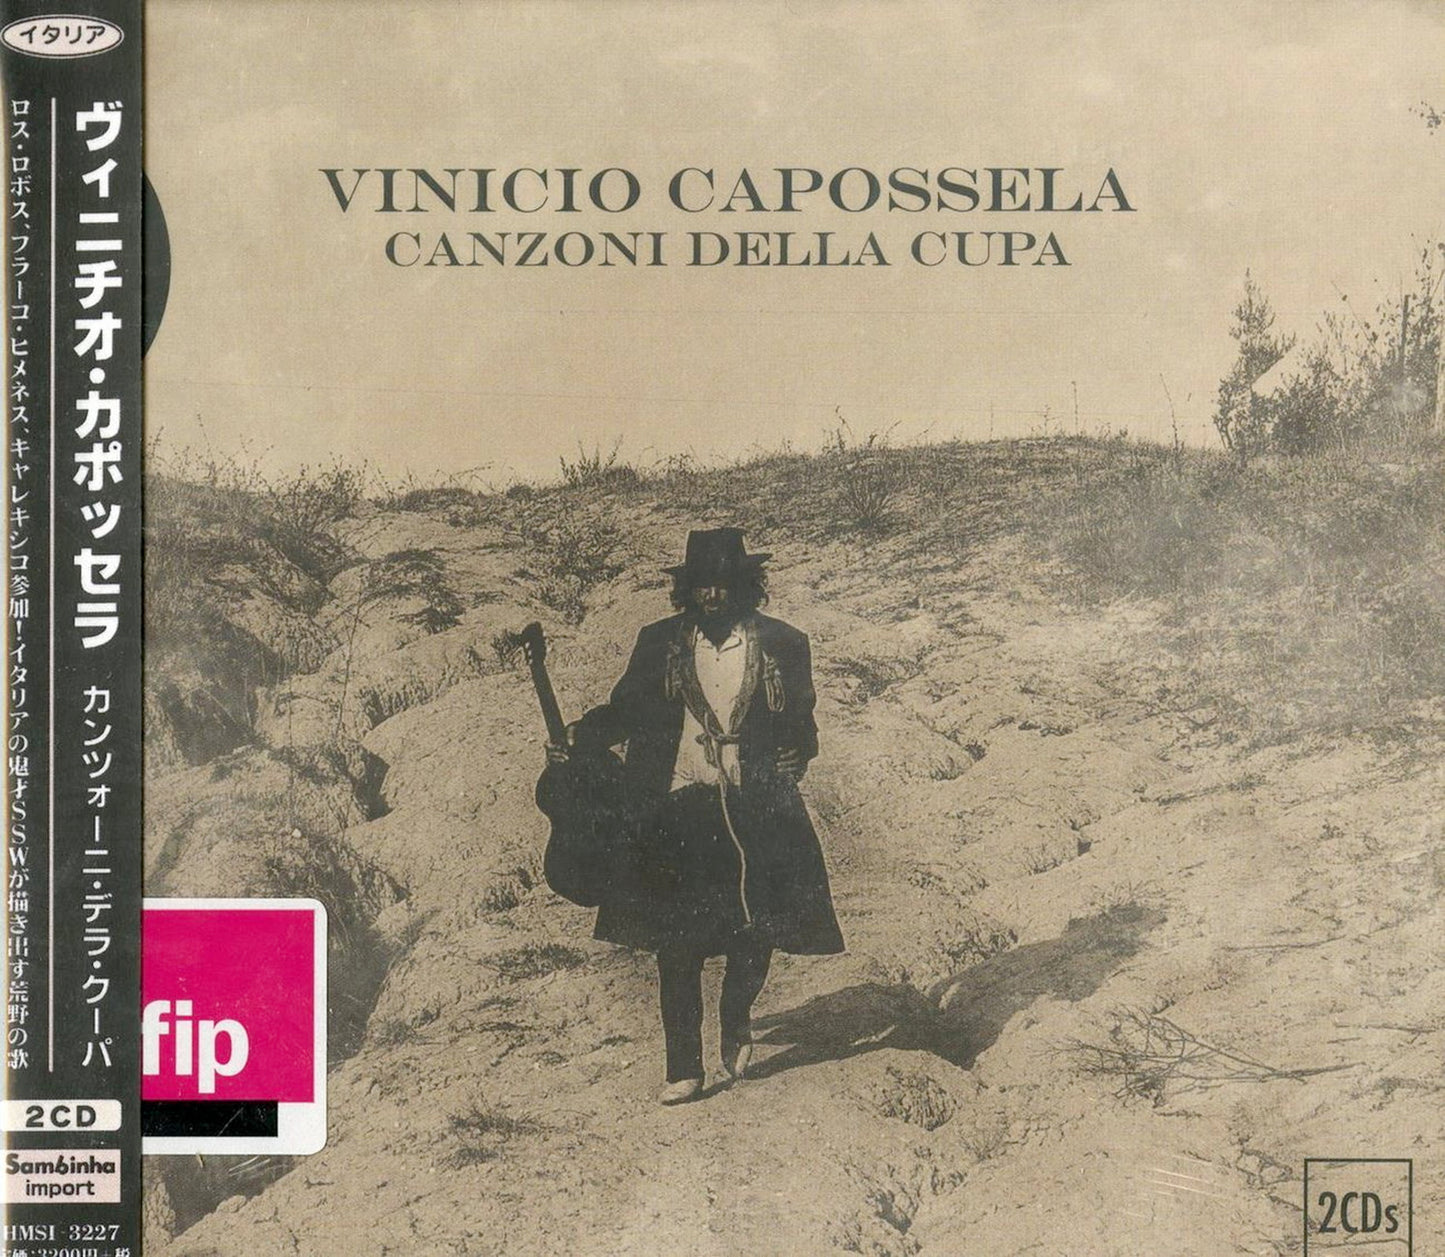 Vinicio Capossela - Canzoni Della Cupa - 2 CD Import  With Japan Obi